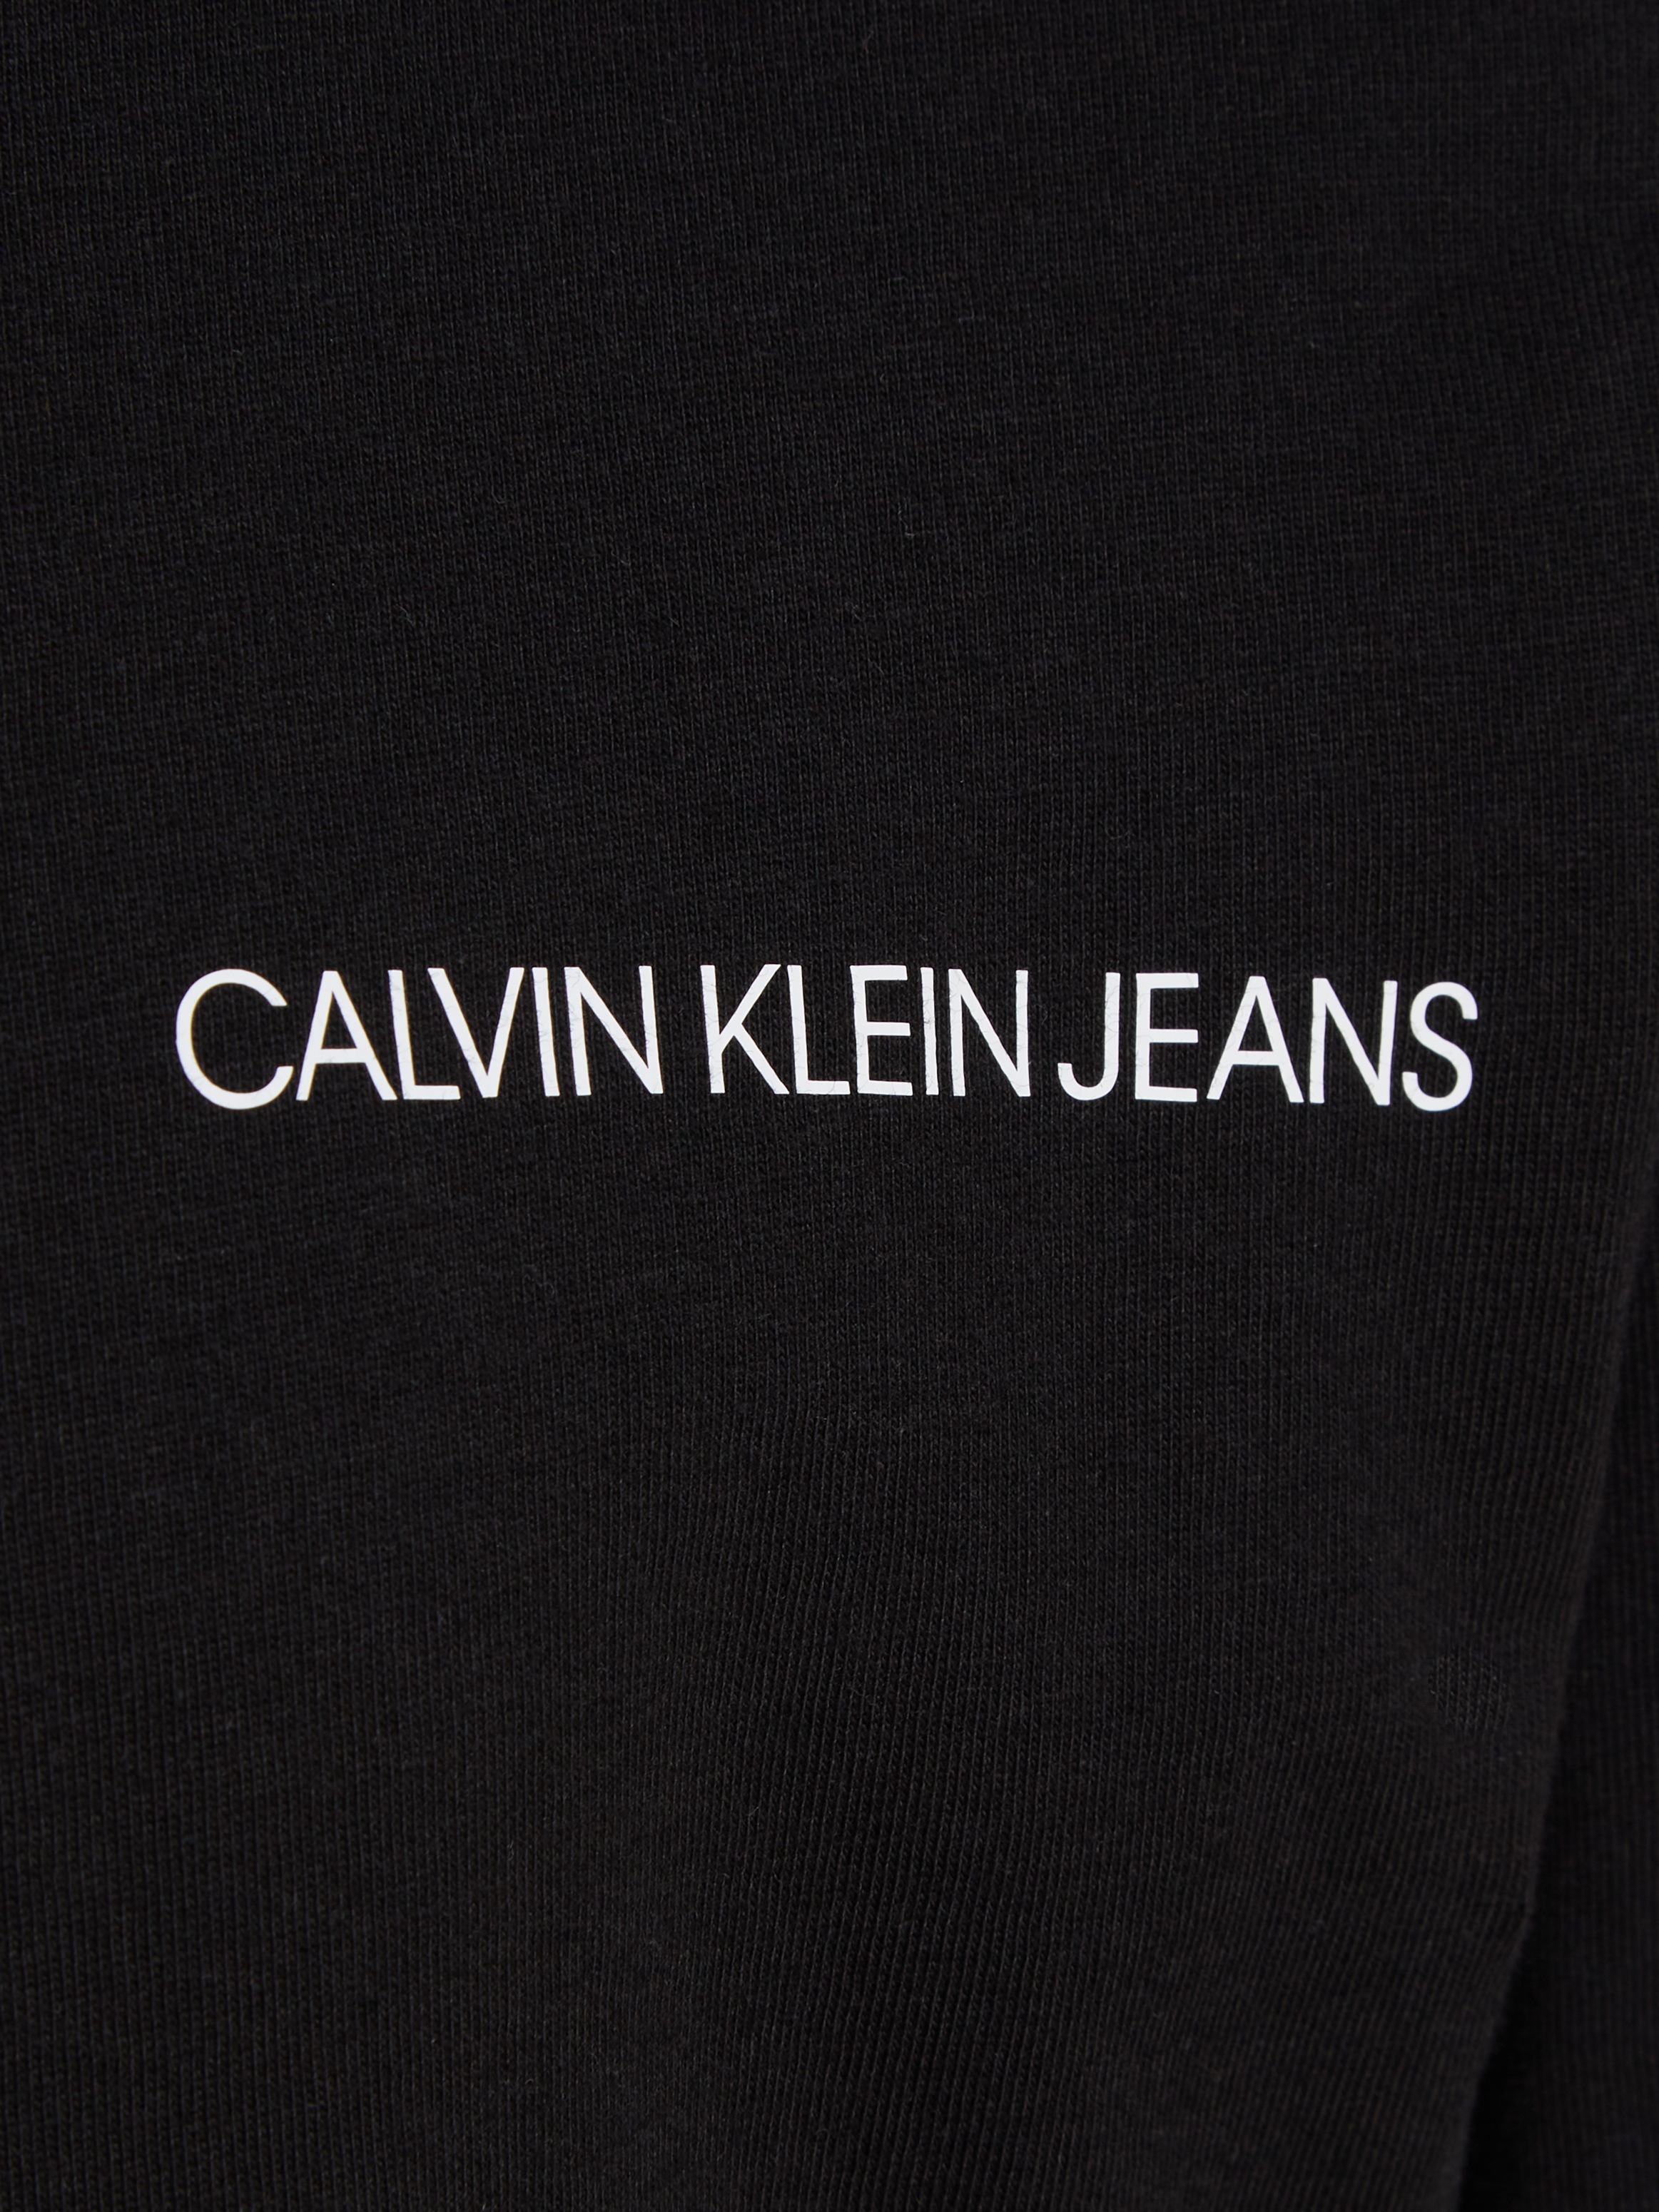 Kinder SHIRT«, »CHEST Calvin T Jeans OTTO INST. bei bestellen LS für Klein Langarmshirt